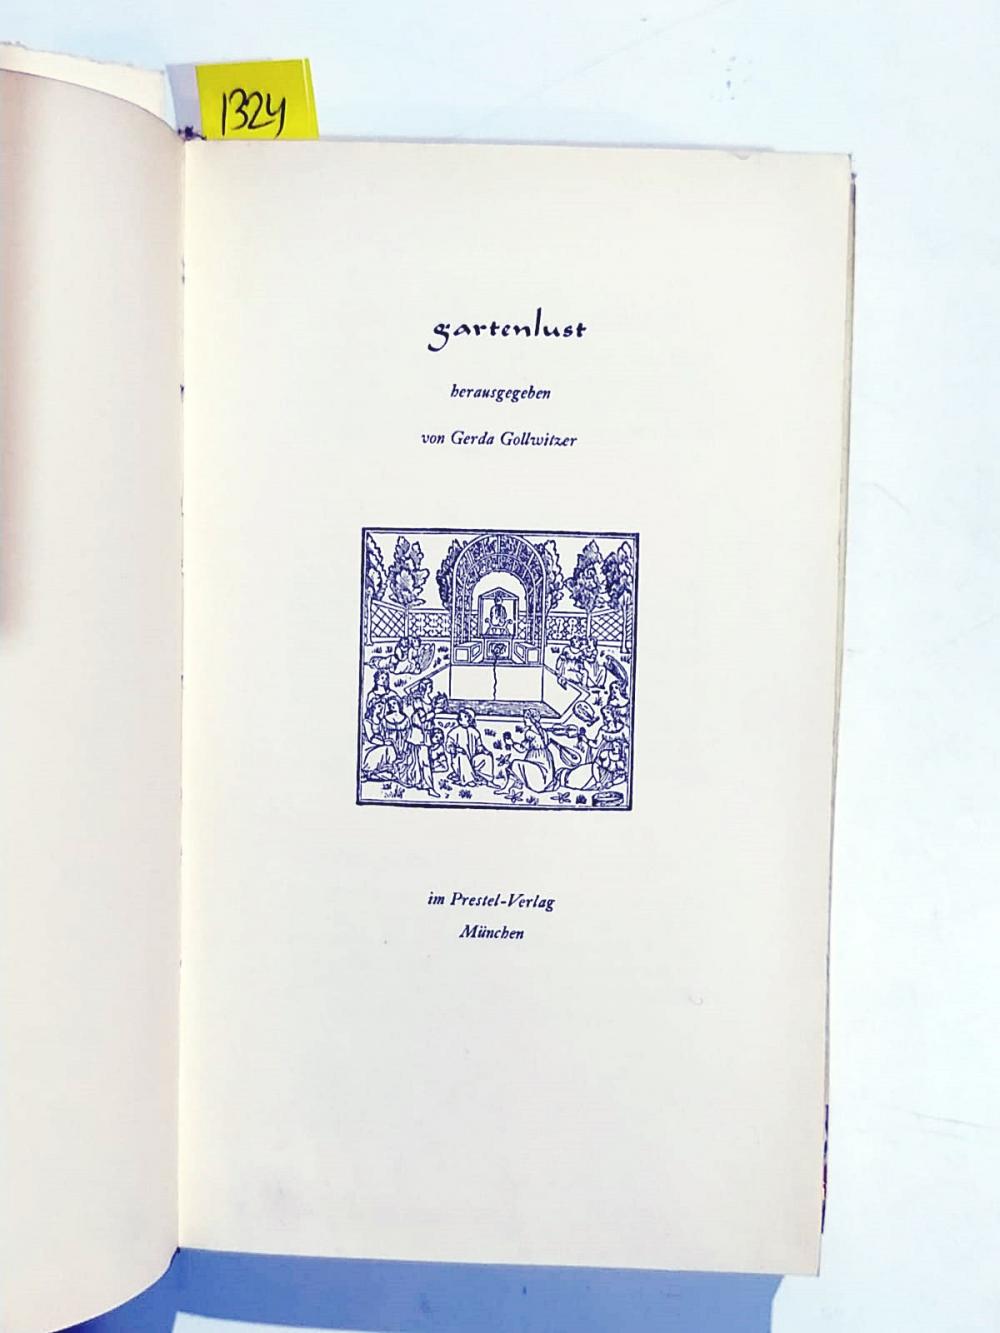 Gartenlust herausgegeben Von Gerda Gollwitzer - Kitap